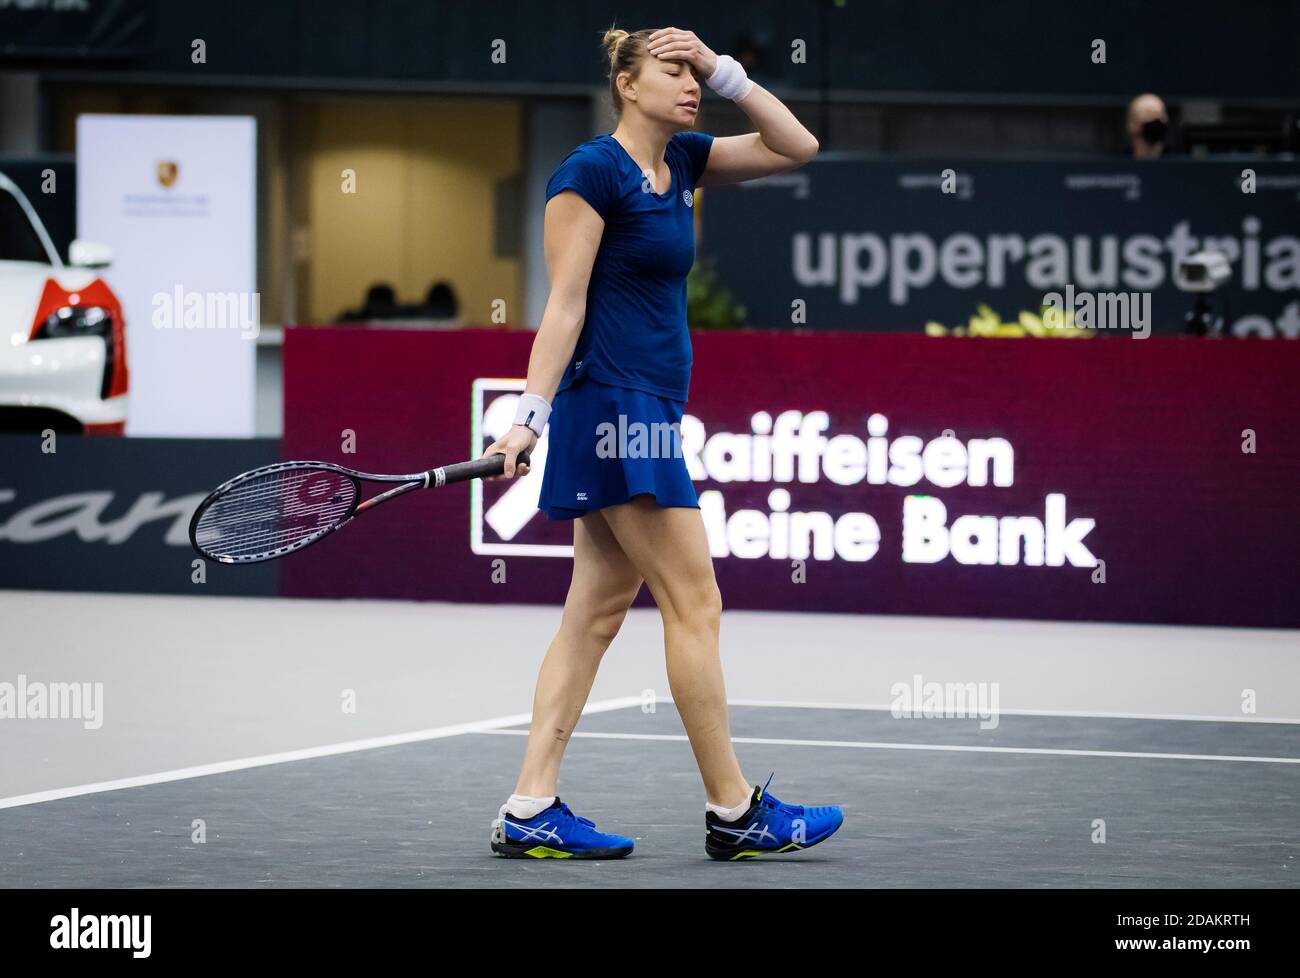 Vera Zvonareva of Russia in action against Elise Mertens of Belgium during her second-round match at the 2020 Upper Austria Ladies / LM Stock Photo